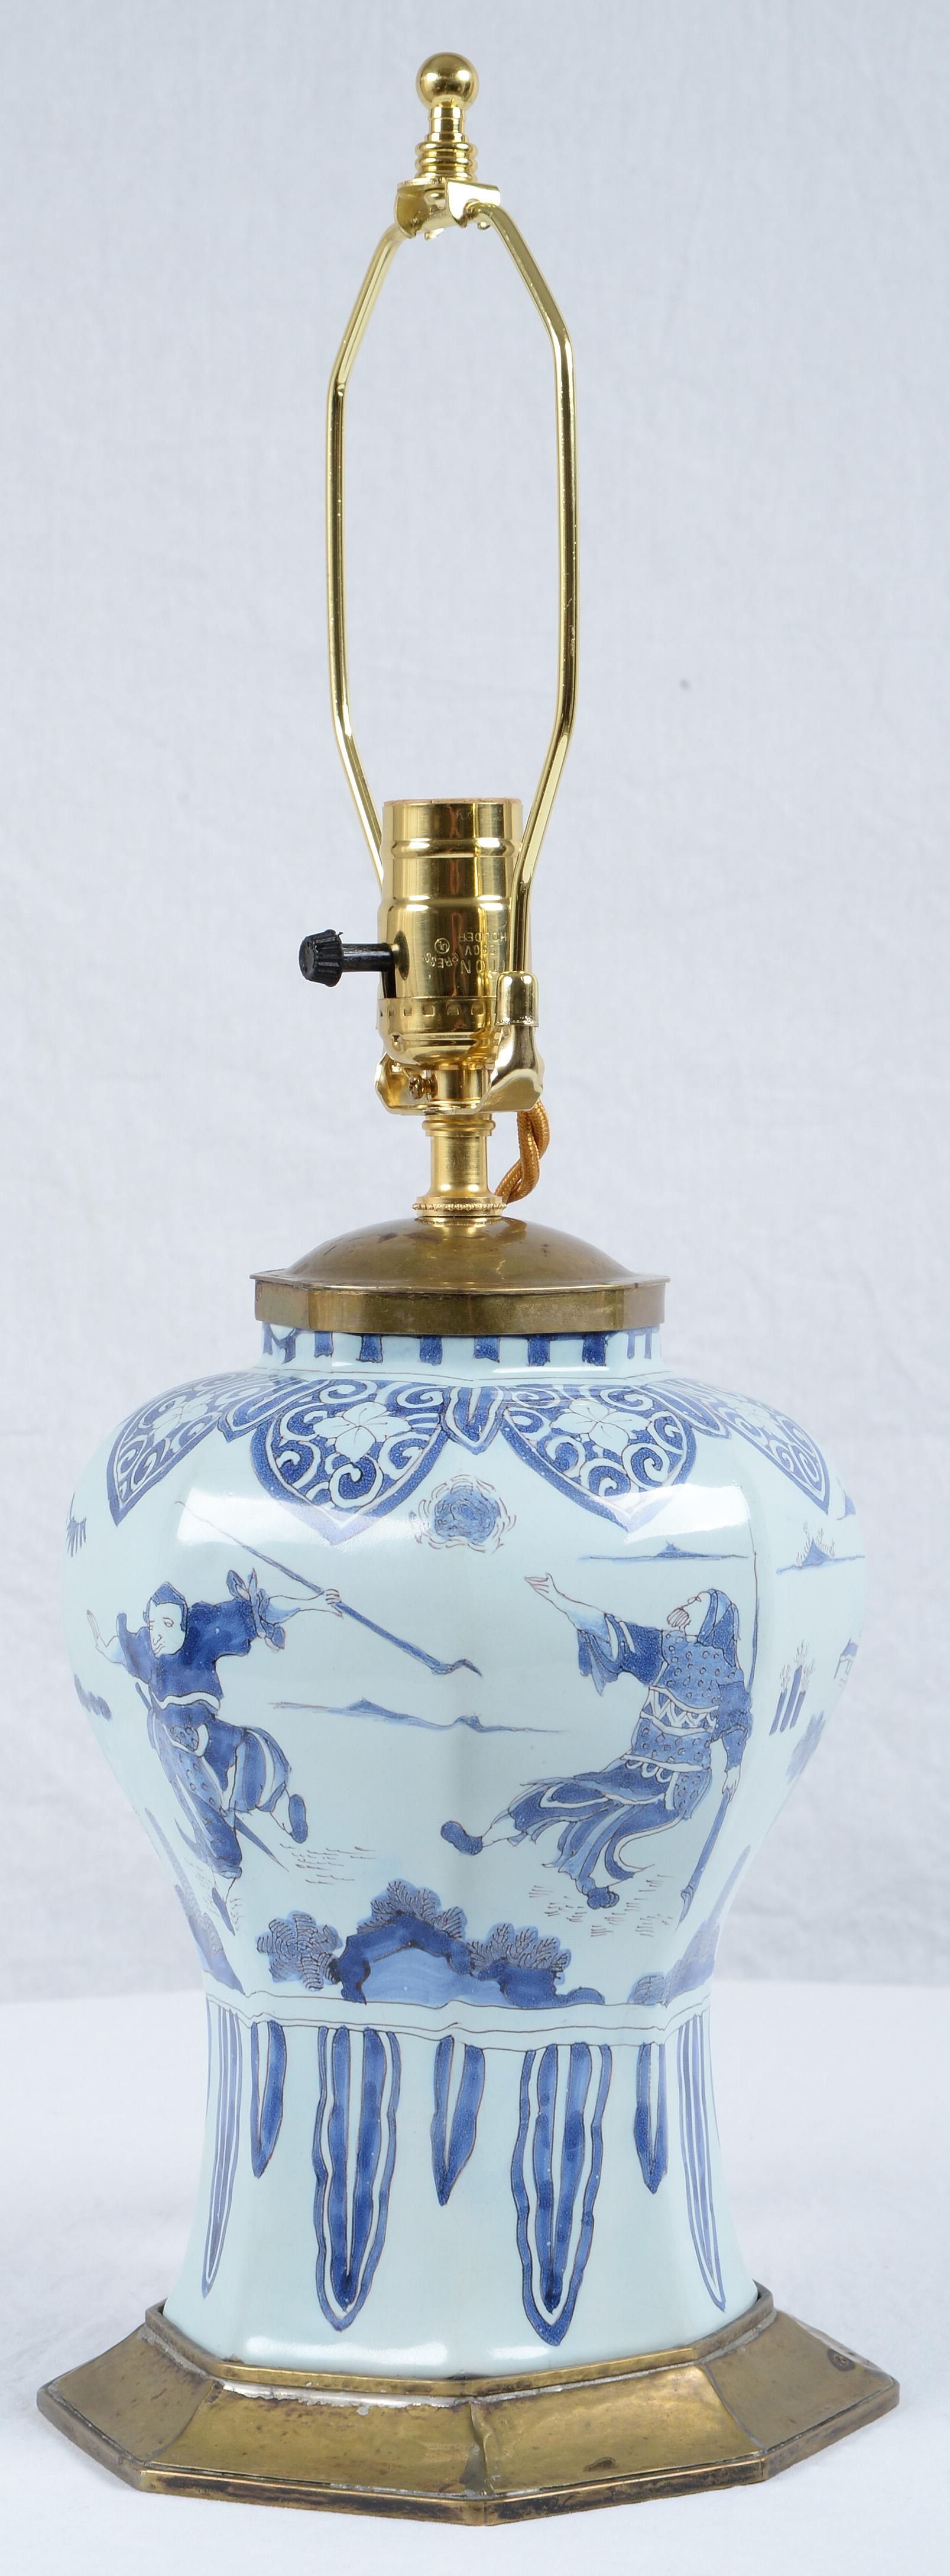 Achteckige Fayence-Vase aus Delft aus dem 17. Jahrhundert, in Messing gefasst und mit einem Chinoiserie-Dekor aus kämpfenden Kriegern und exotischen Landschaften verziert. Die hier angegebenen Maße sind die der Vase mit Beschlägen und Lampenschirm.